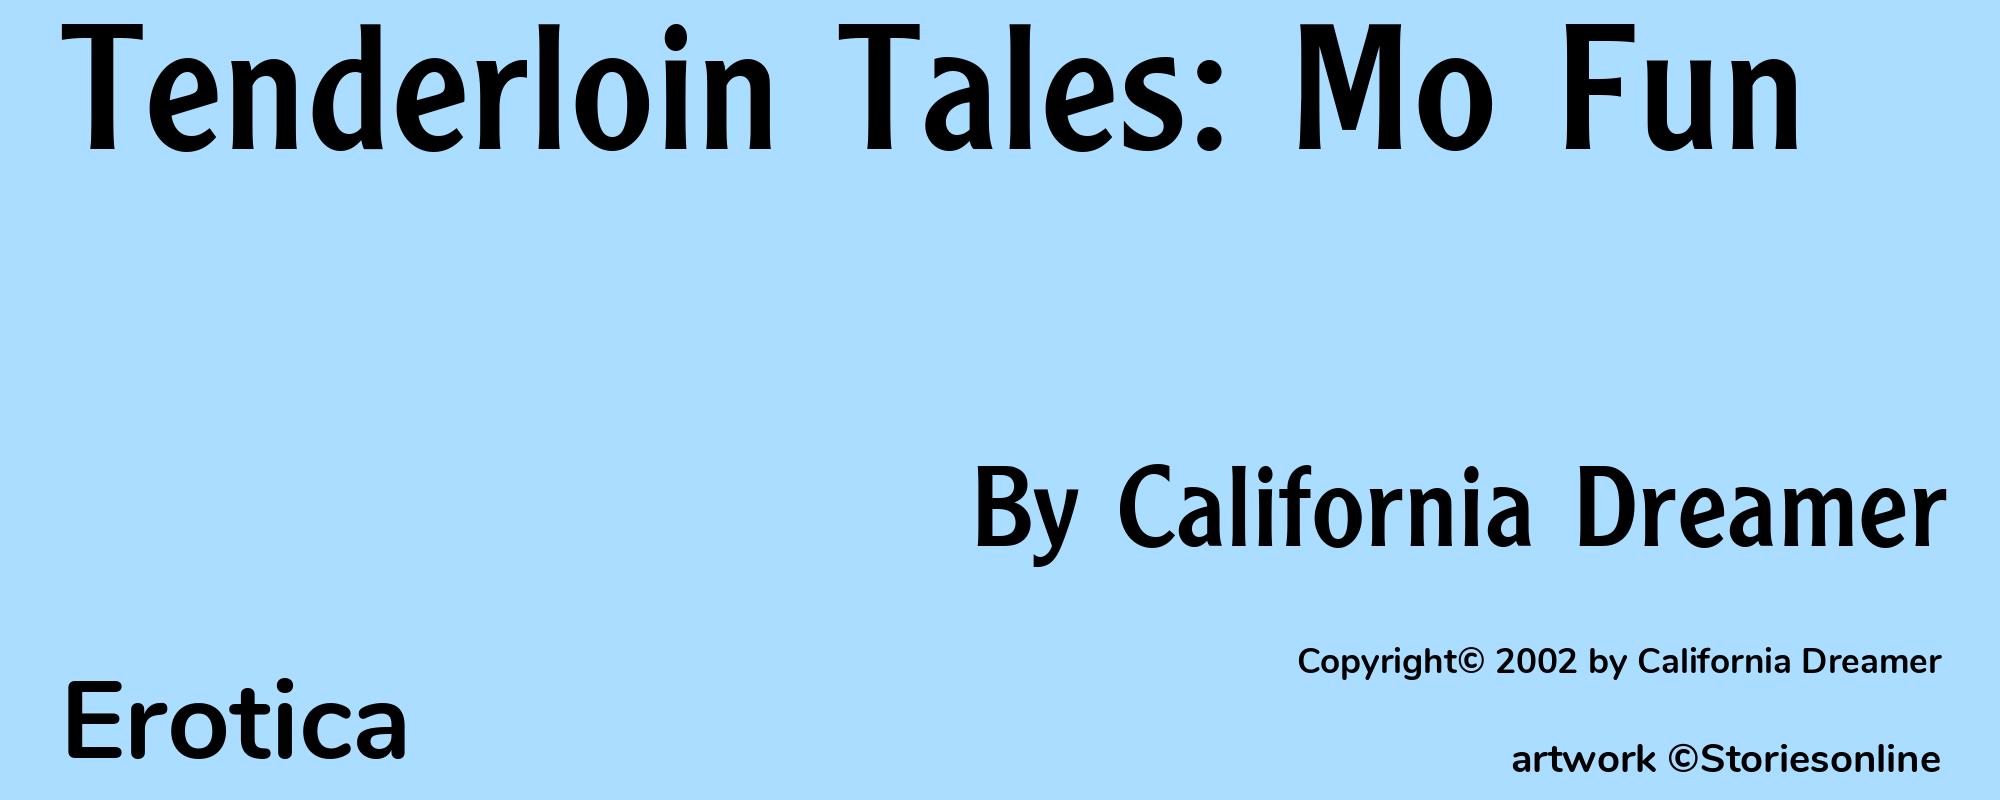 Tenderloin Tales: Mo Fun - Cover